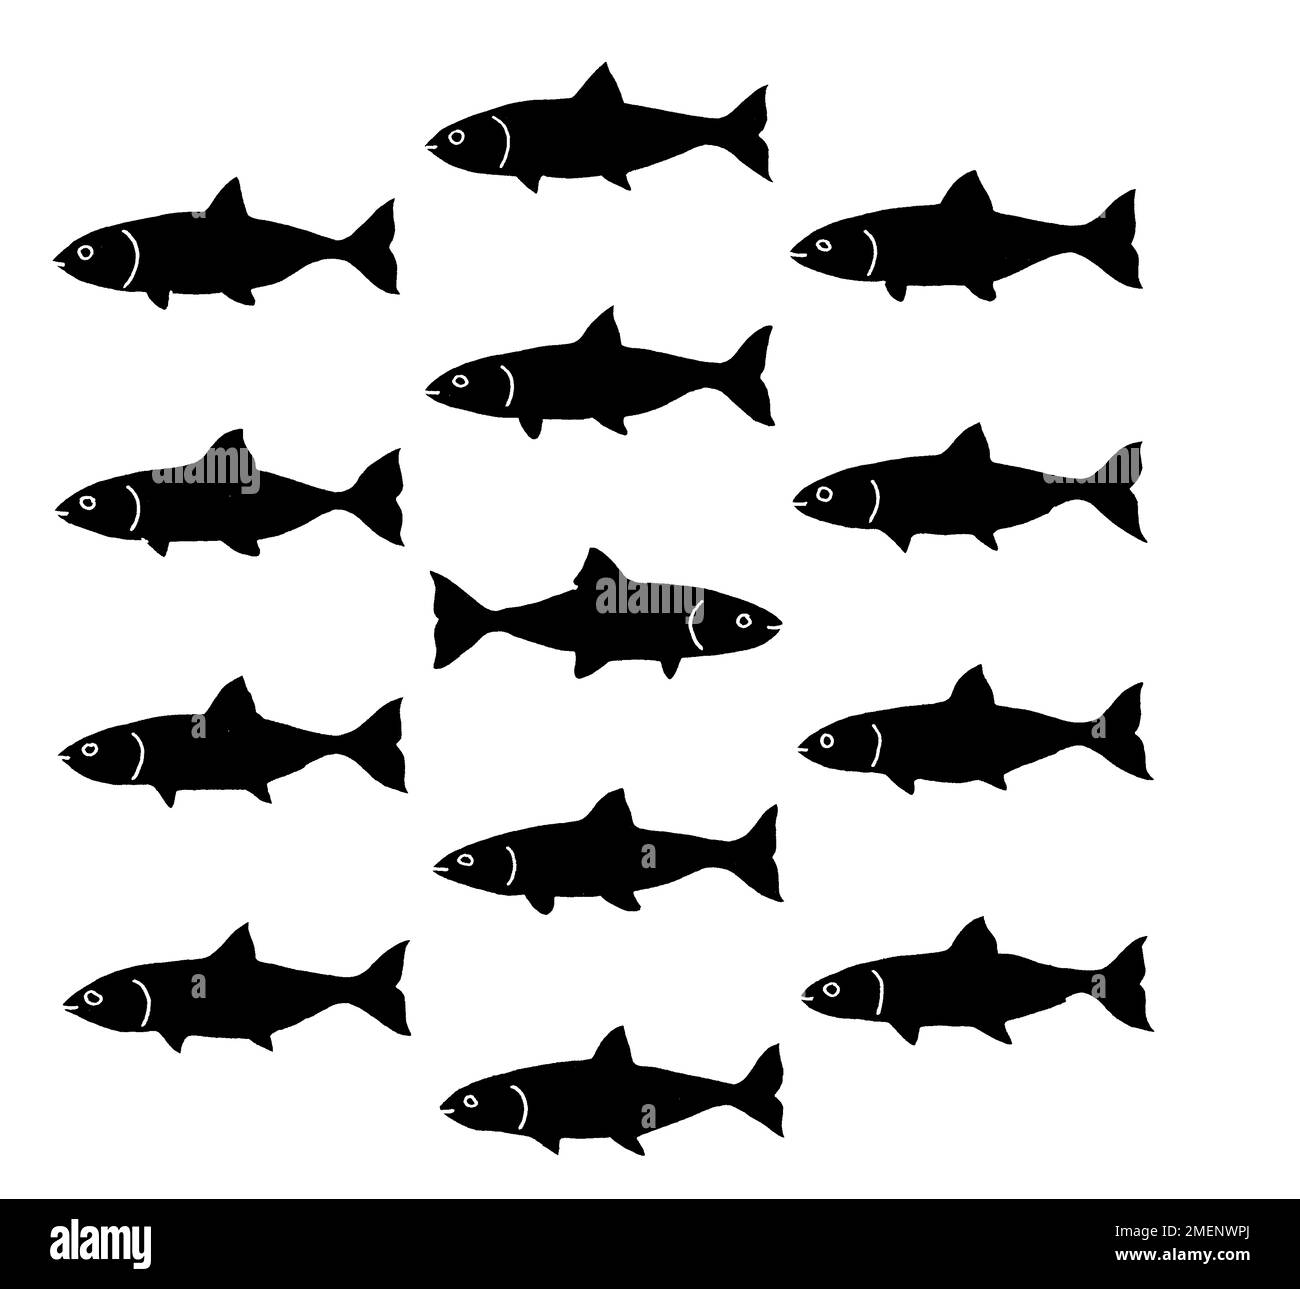 Illustrazione in bianco e nero di un gruppo di pesci, con un nuoto nella direzione opposta Foto Stock